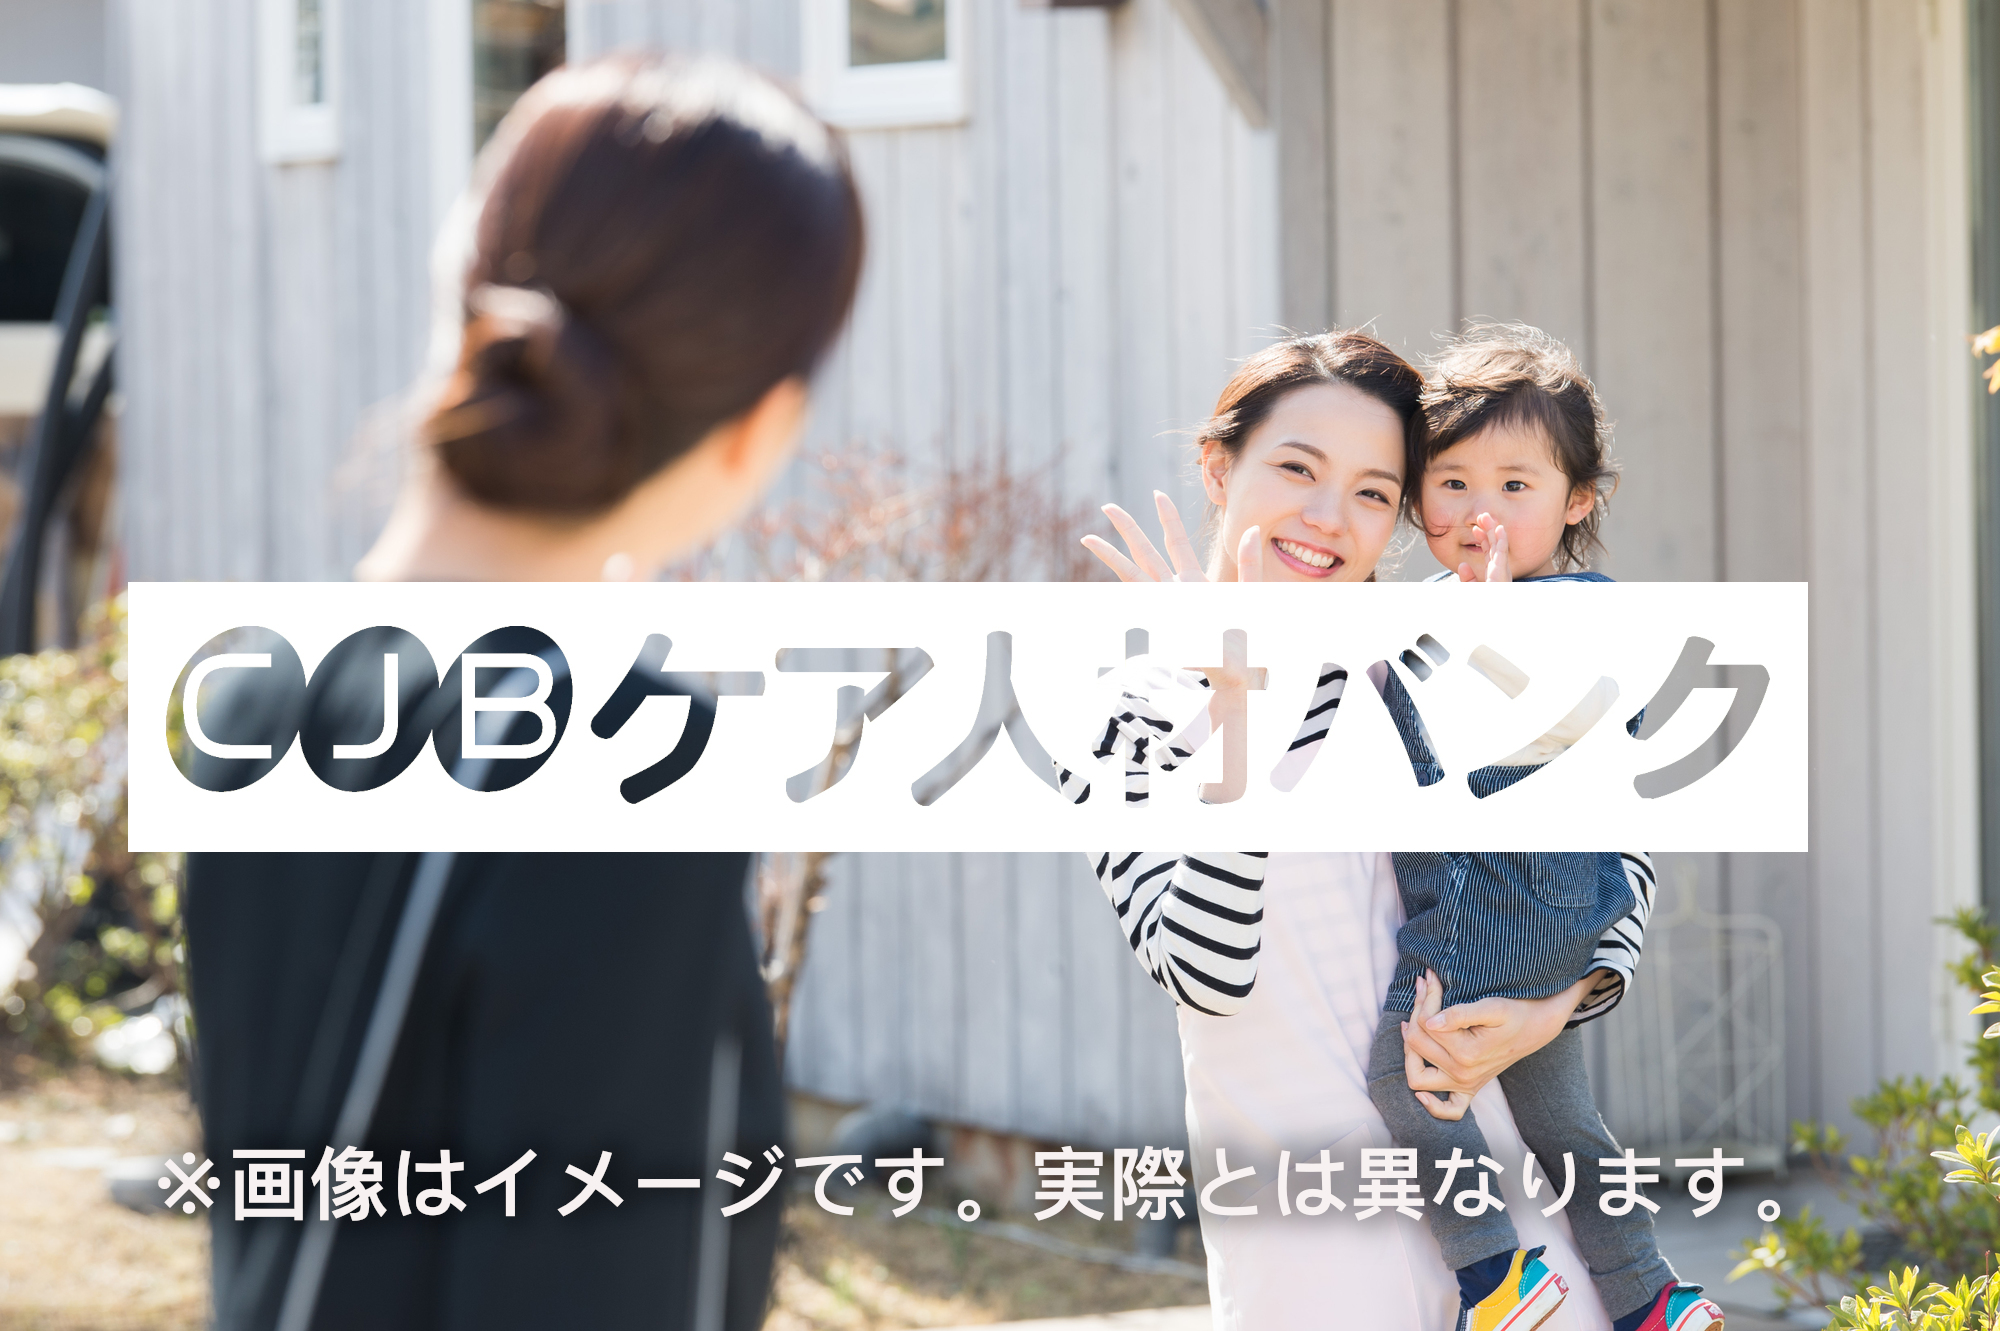 神奈川県横浜市中区・放課後等デイサービス・常勤 児童発達支援管理責任者の非公開求人情報(C51595)のイメージ画像